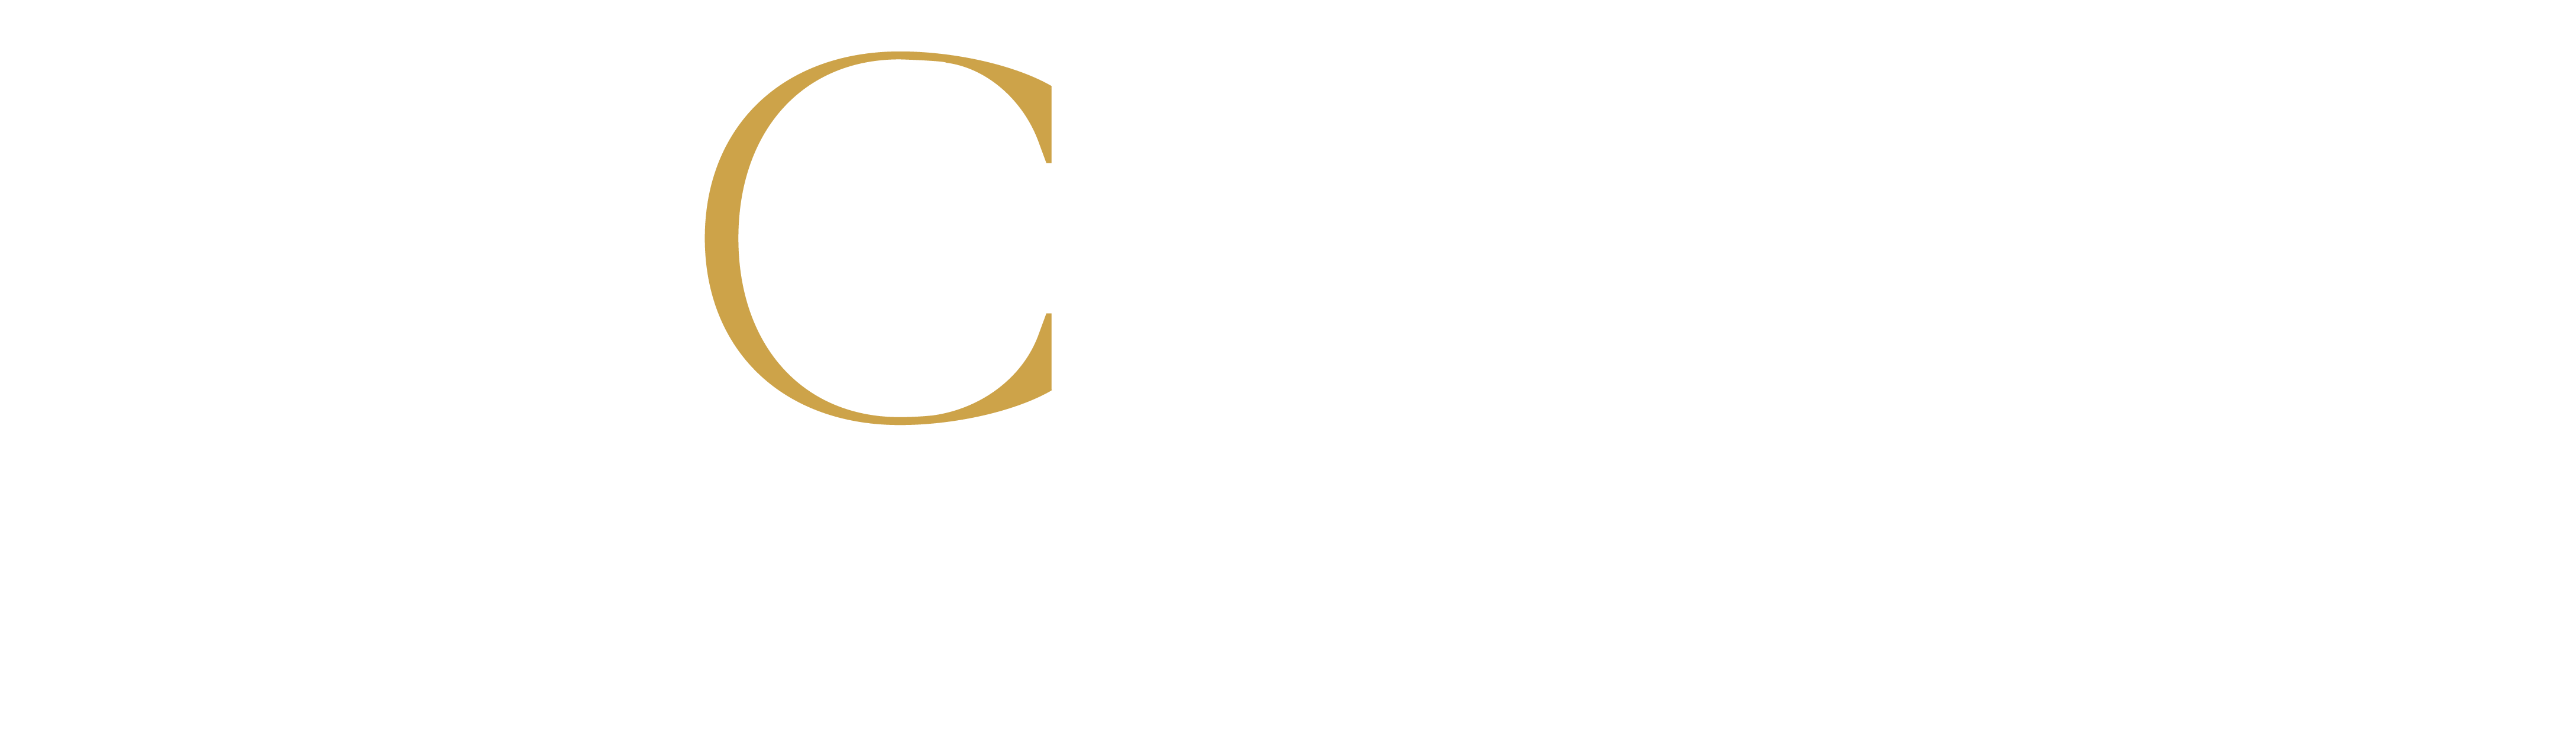 BLCK Label Aesthetics Studio 